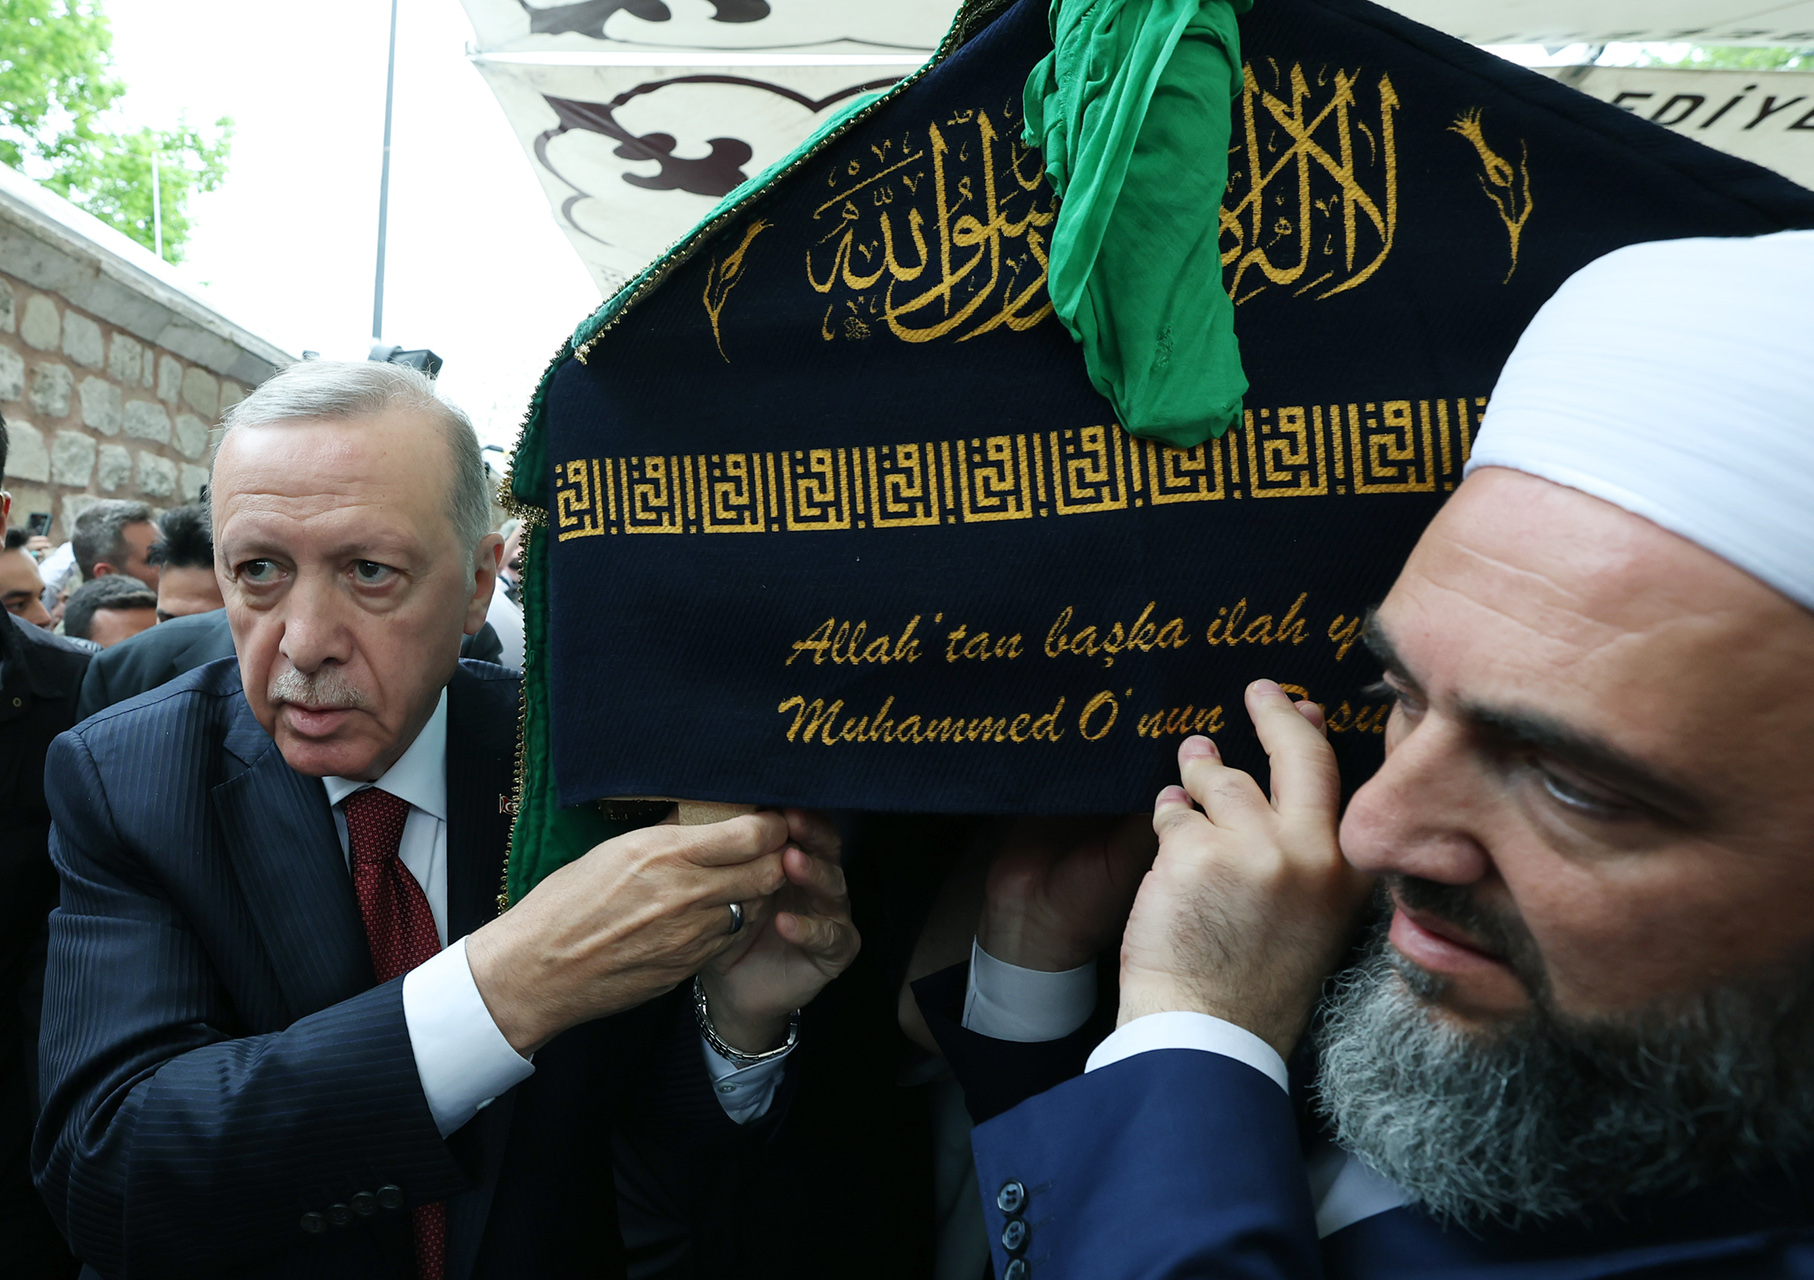 أردوغان يُصر على حمل نعش عبدالمجيد الزنداني ولقطة مؤثرة